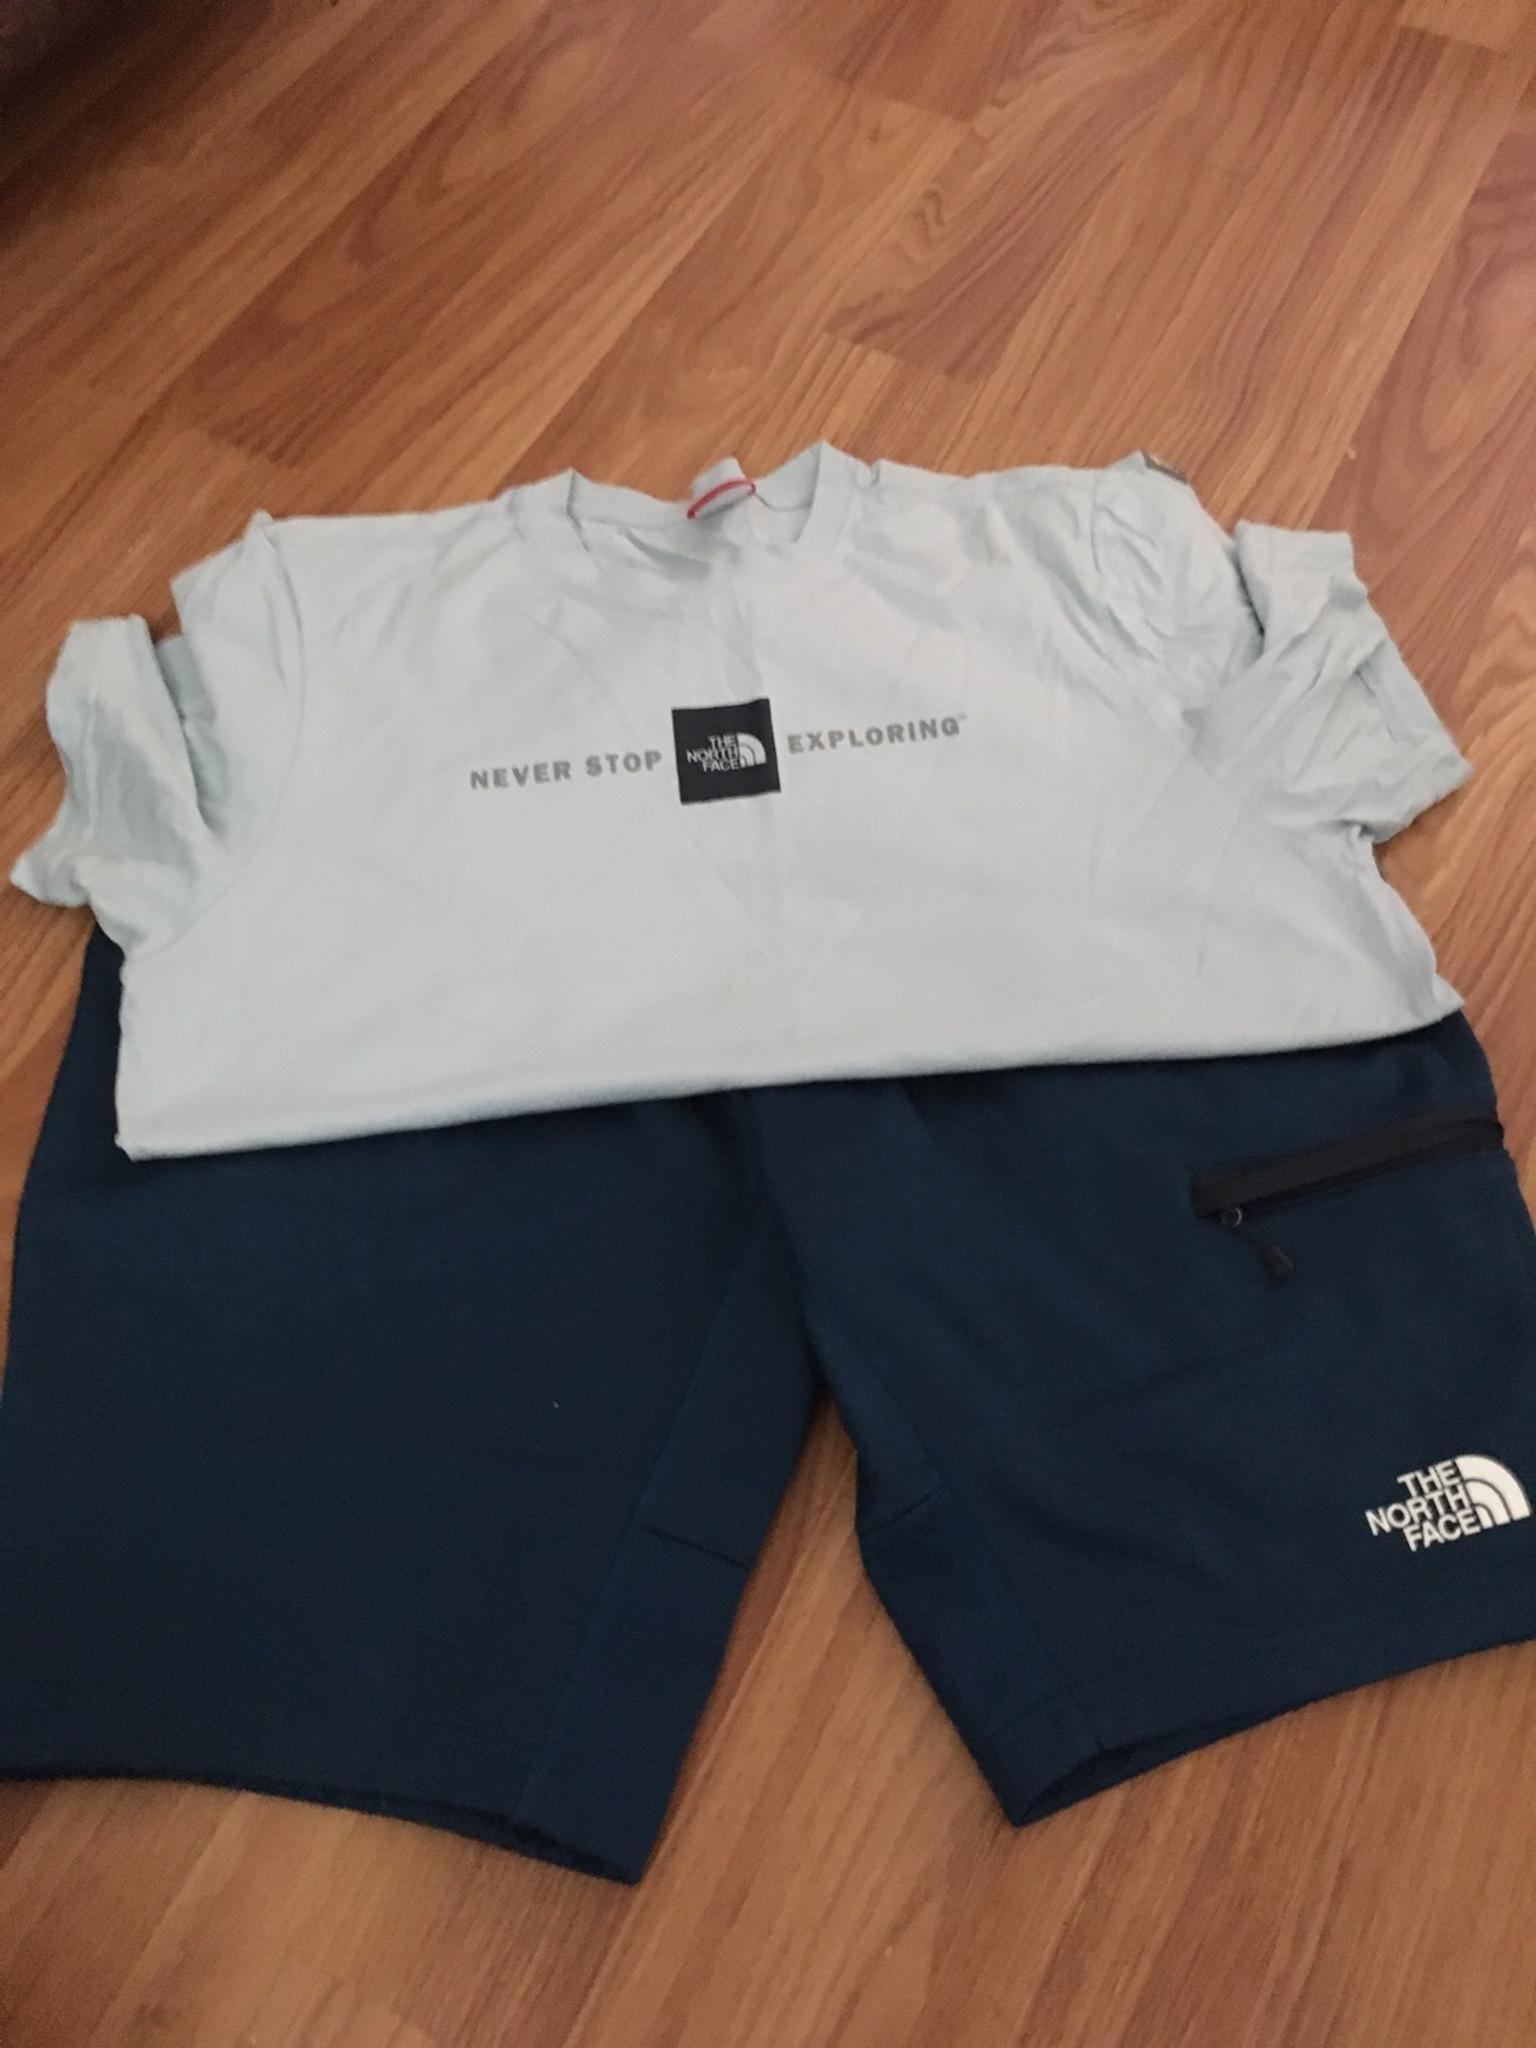 Men's North face shorts and T-shirt set 